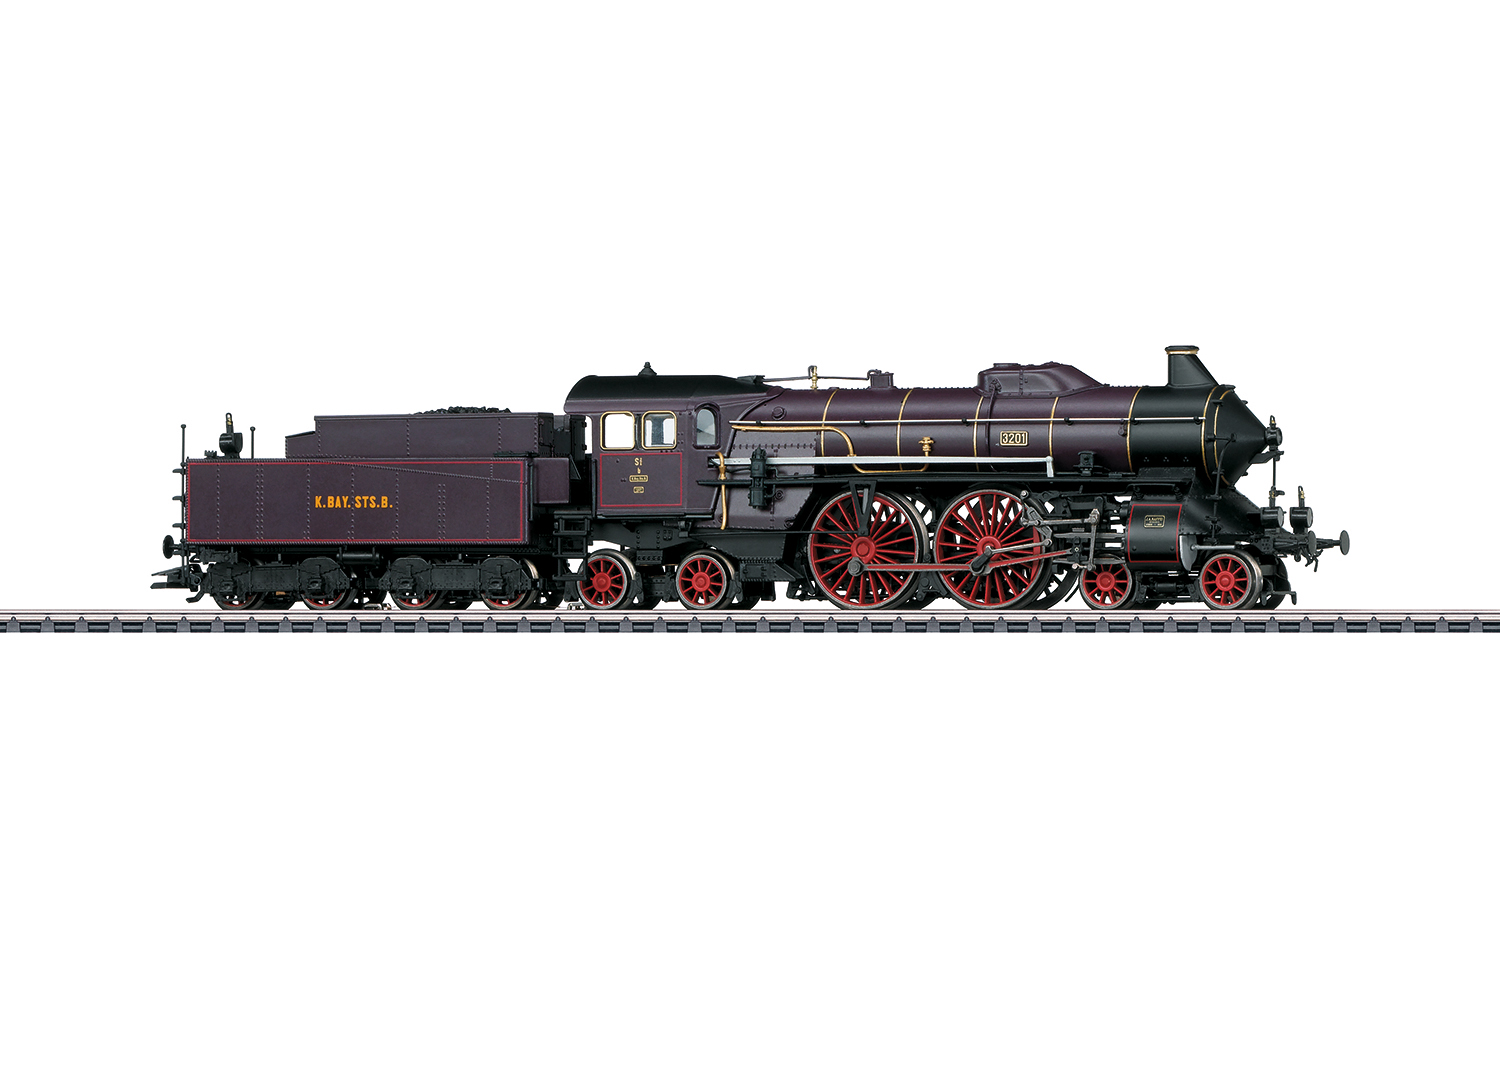 Locomotive Märklin HO réprésentant une locomotive  vapeur pour trains rapides du type bavarois S 2/6 en livre violet-brun avec cerclage de chaudière d'or des chemins de fer royaux bavarois (K.Bay.Sts.B.), pour utilisation sur le réseau de la rive gauche du Rhin (réseau palatin). État de service autour de 1910 jusqu'en 1912. RÉf 37018. Source : Märklin.